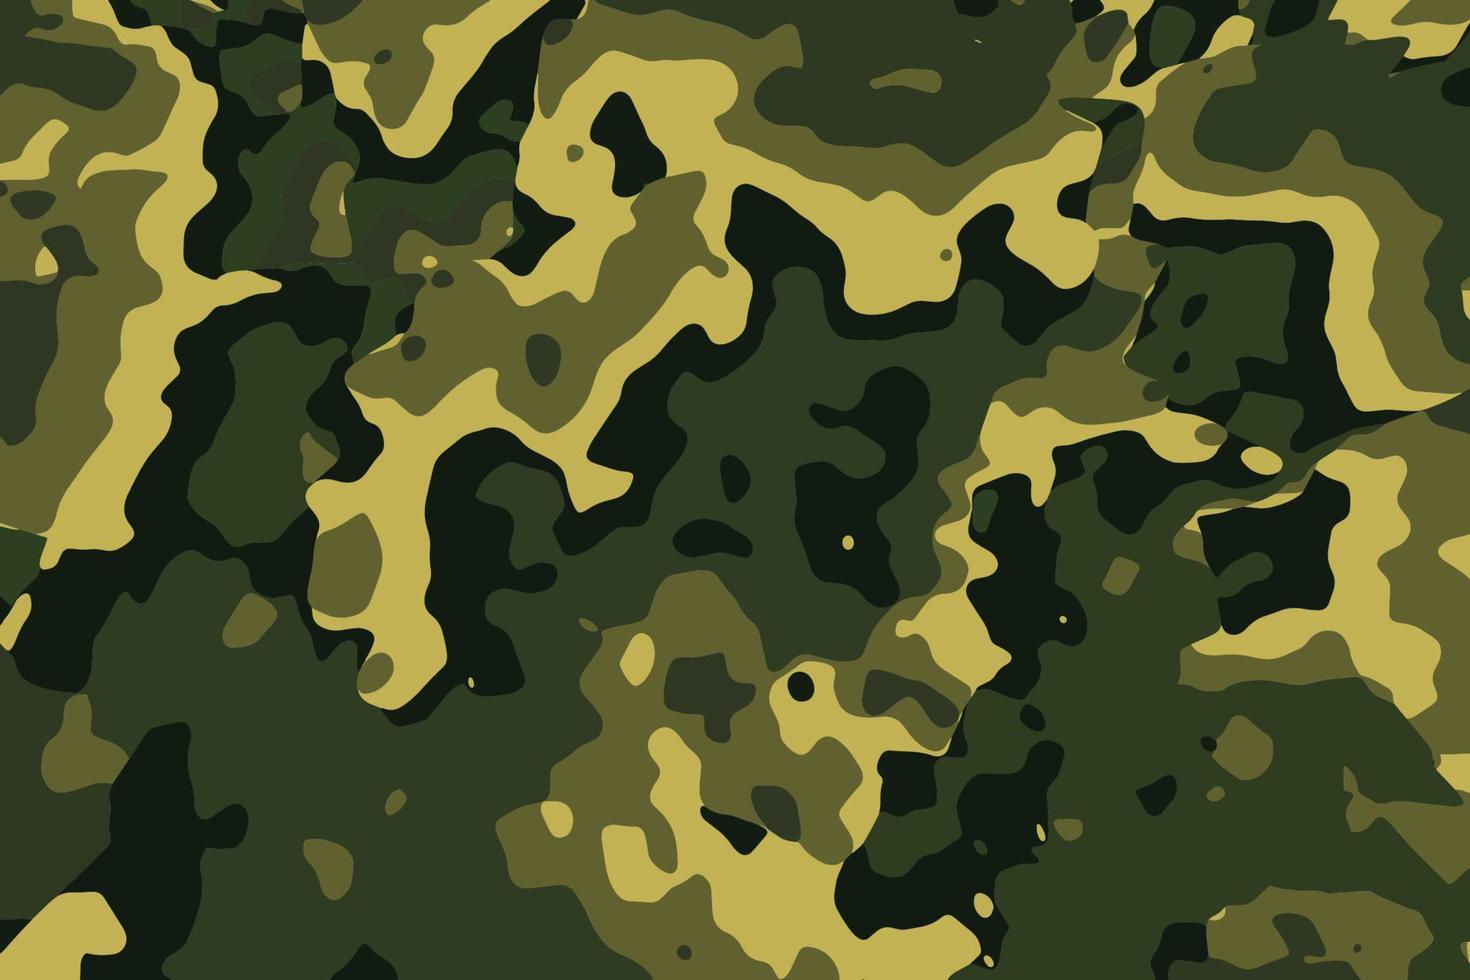 klassischer Camouflage-Militärhintergrund. abstrakte grüne Camo-Textur im Waldstil. Armeekleidungsmuster in Khaki-Farben vektor